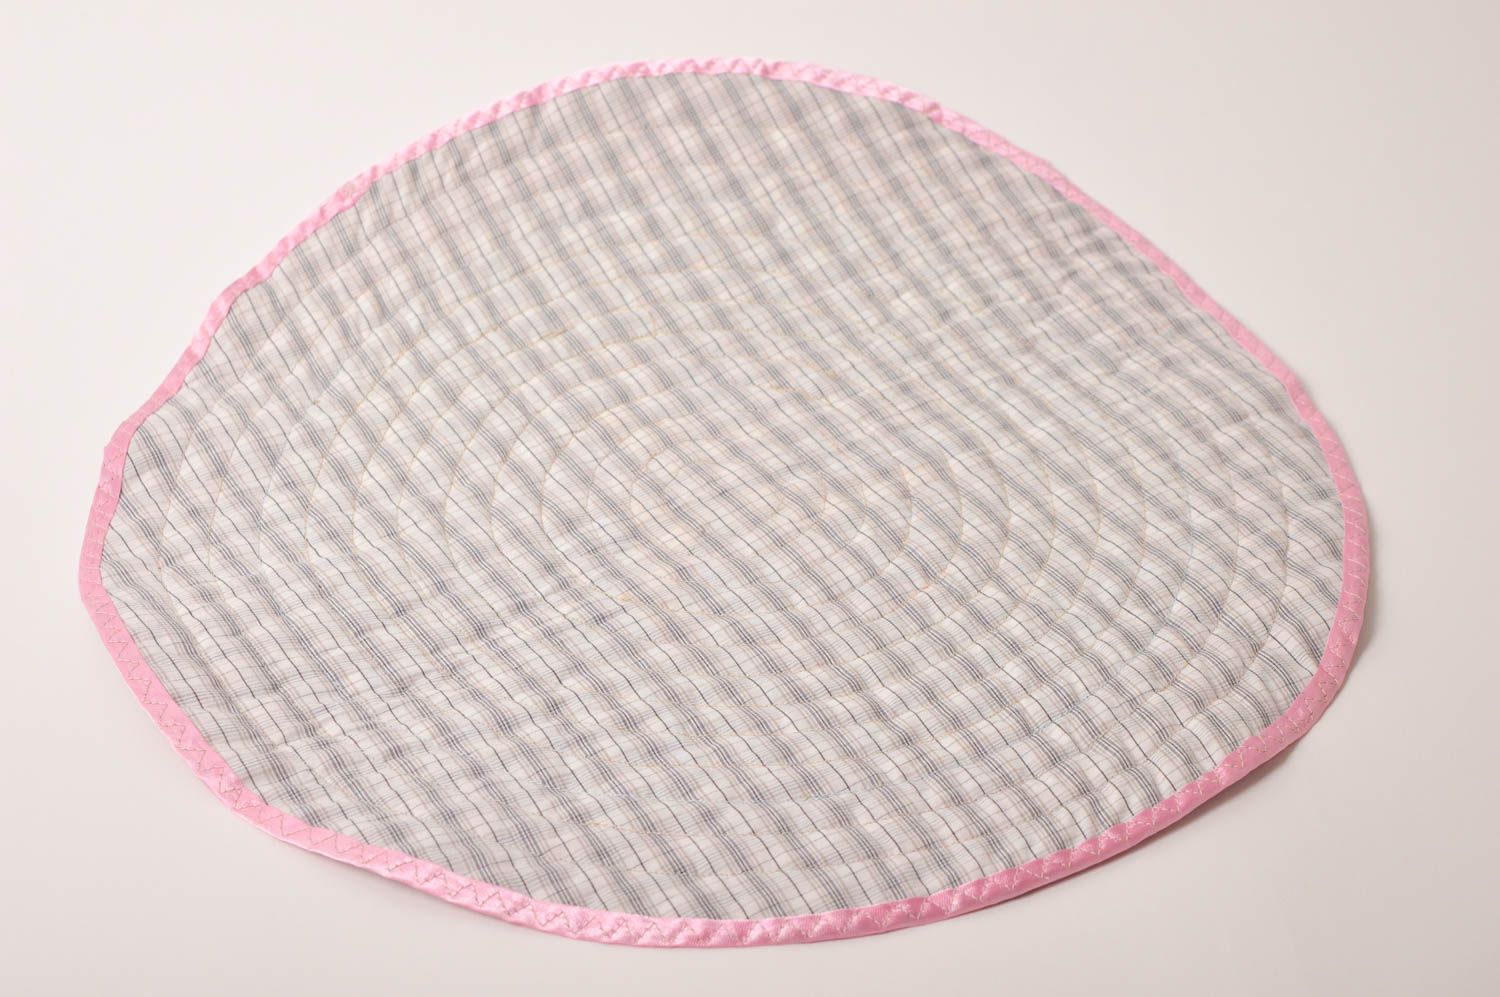 Текстиль для дома ручной работы подарок женщине тканевая подставка для посуды фото 3